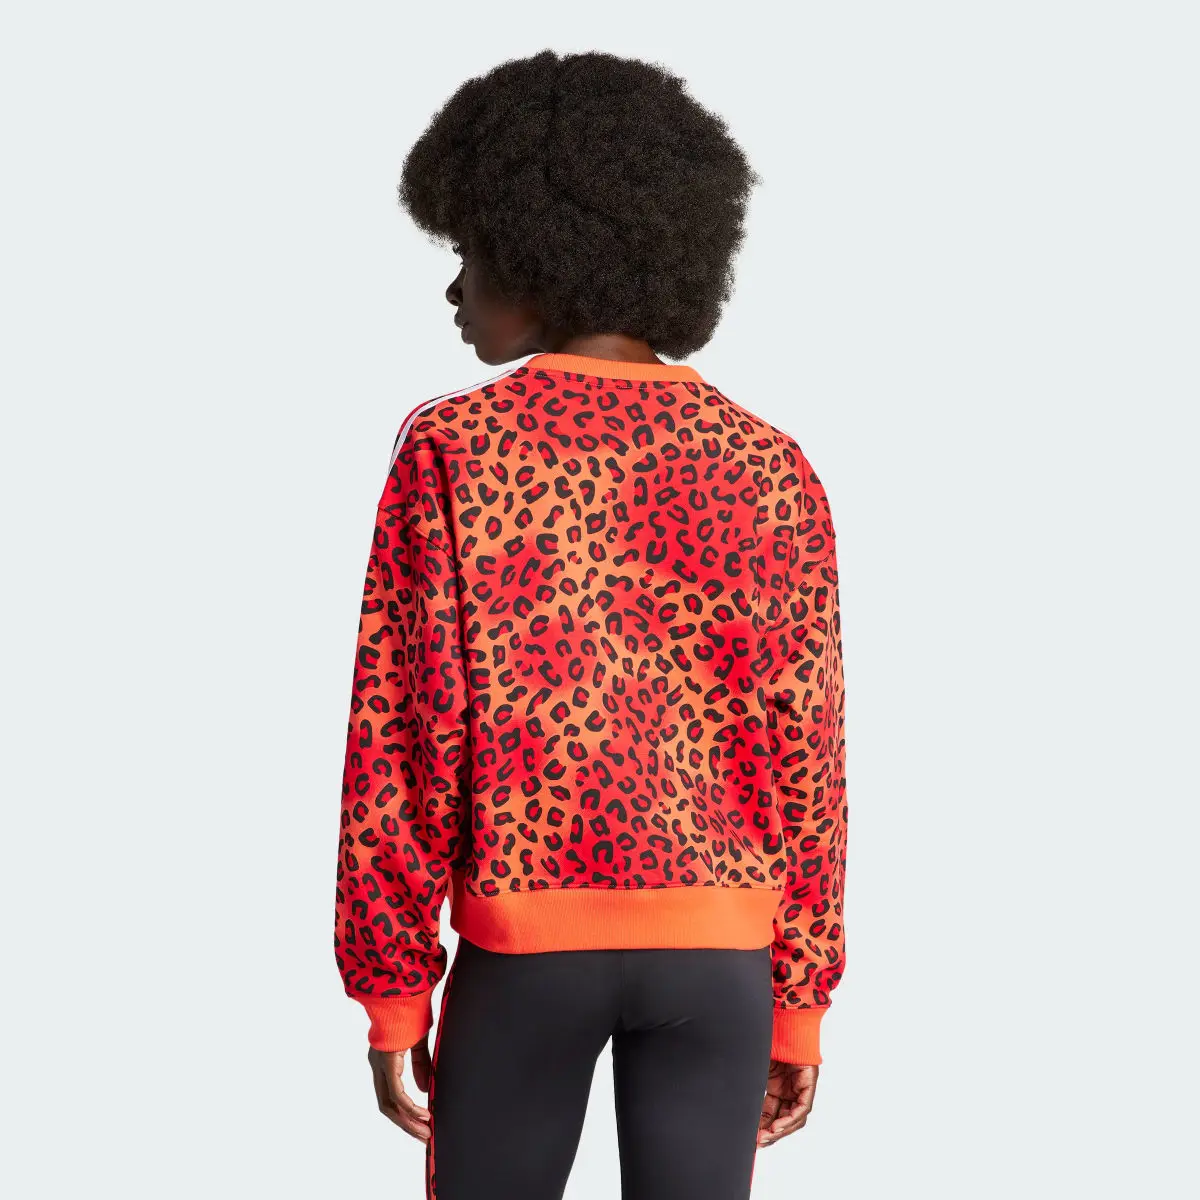 Adidas Originals Leopard Luxe Trefoil Sweatshirt. 3